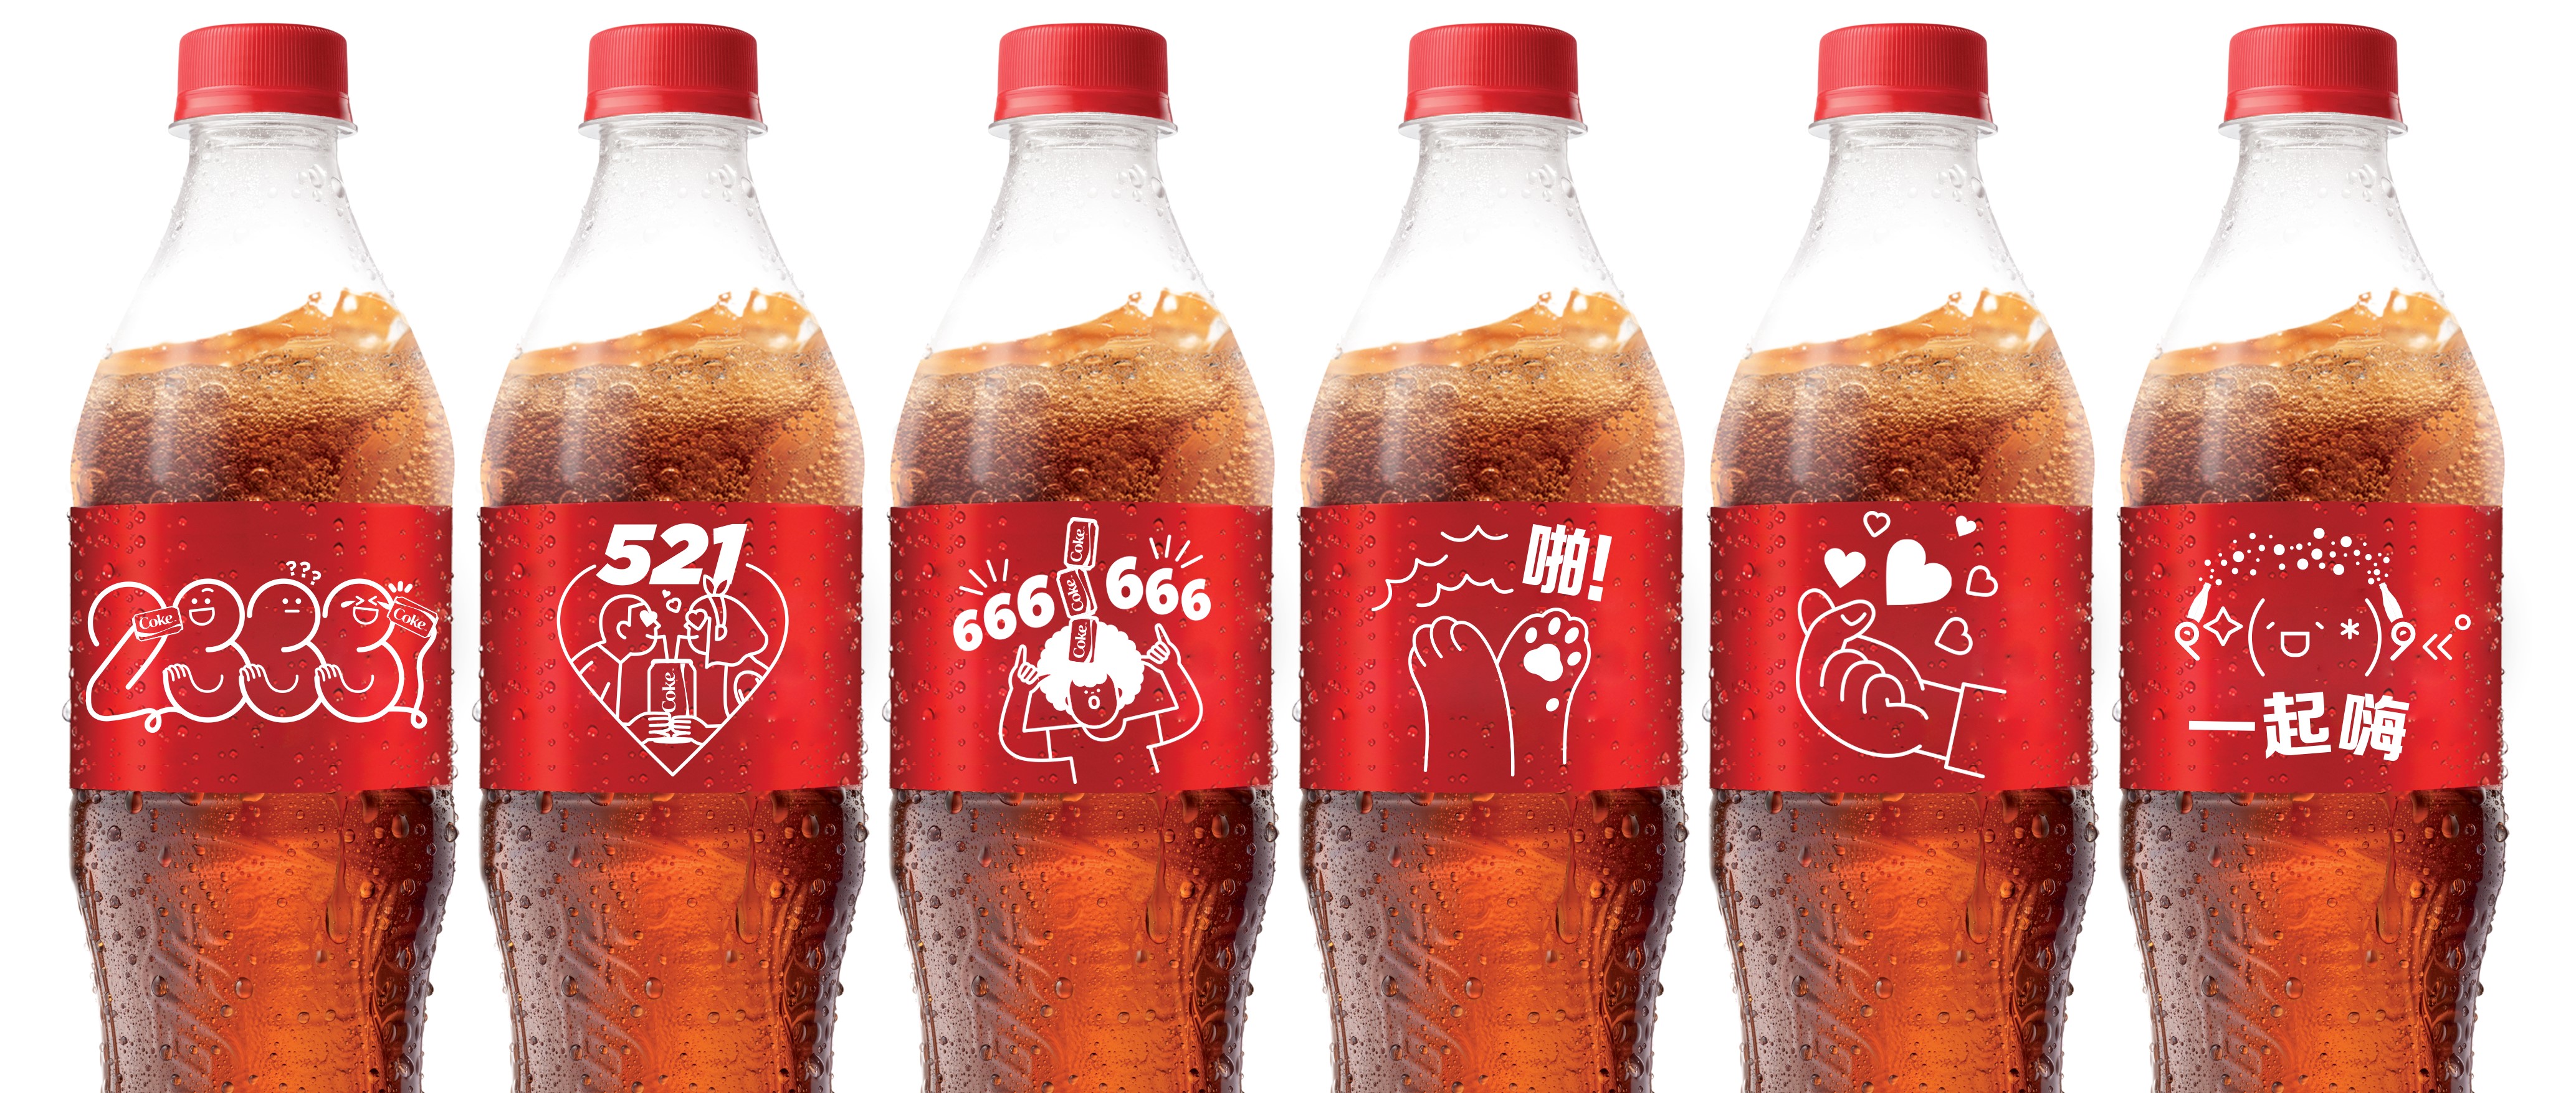 coca cola kod etiket